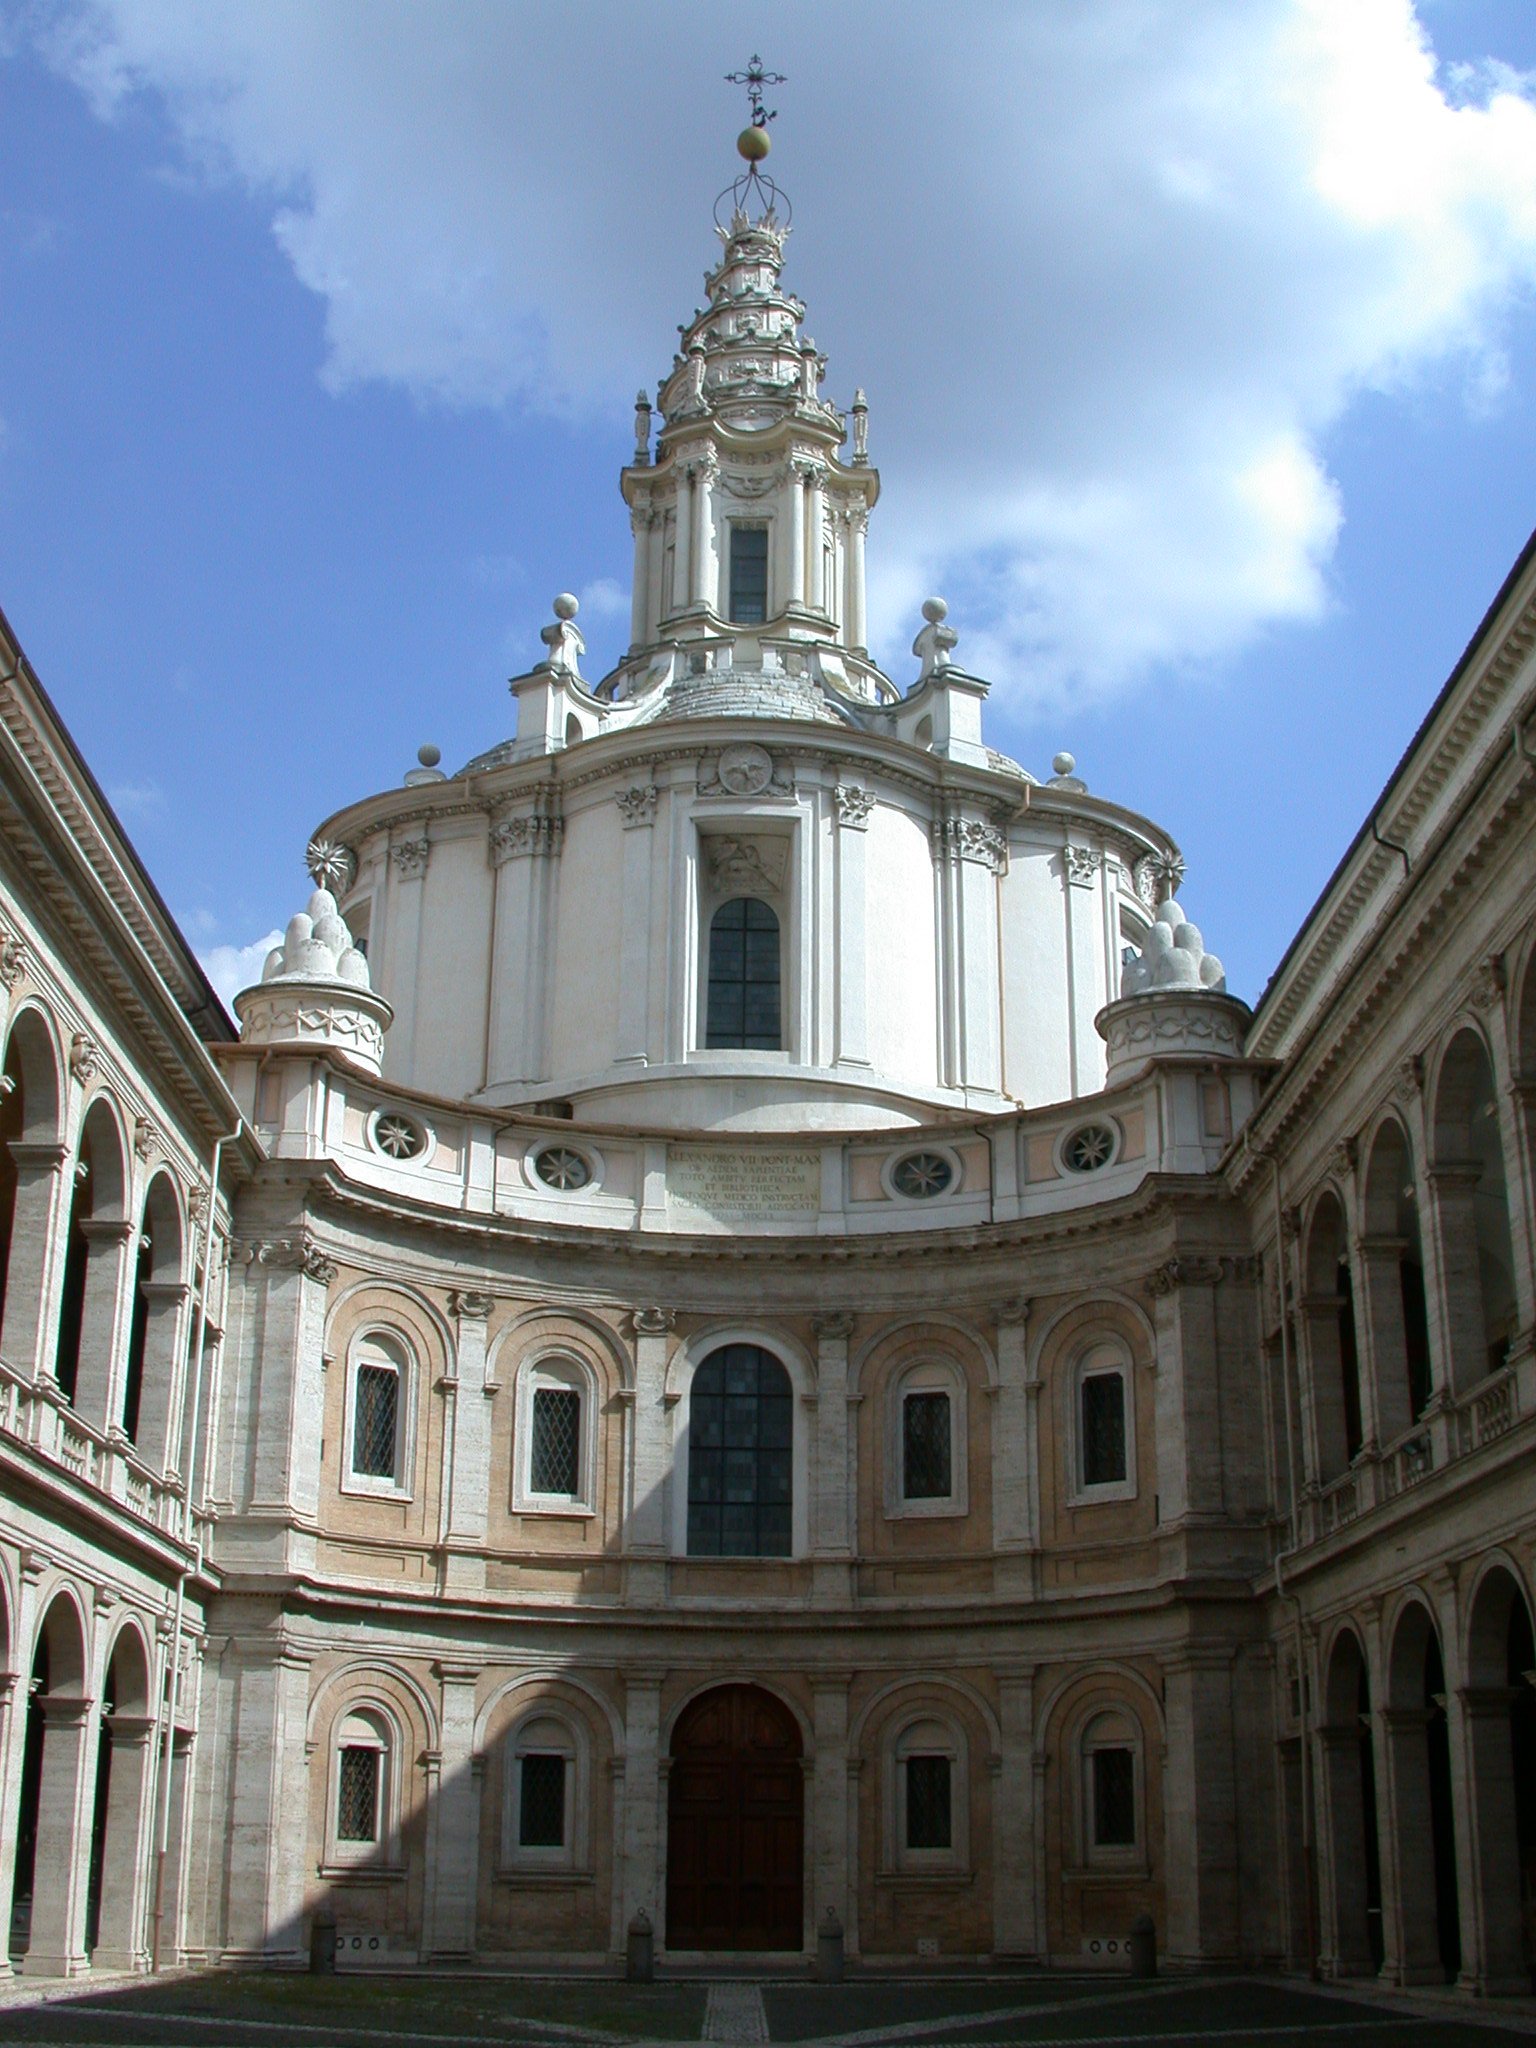 4 Francesco Borromini SantIvo alla Sapienza Roma celebra Francesco Borromini. In programma mostre, lezioni e convegni con famosi archistar